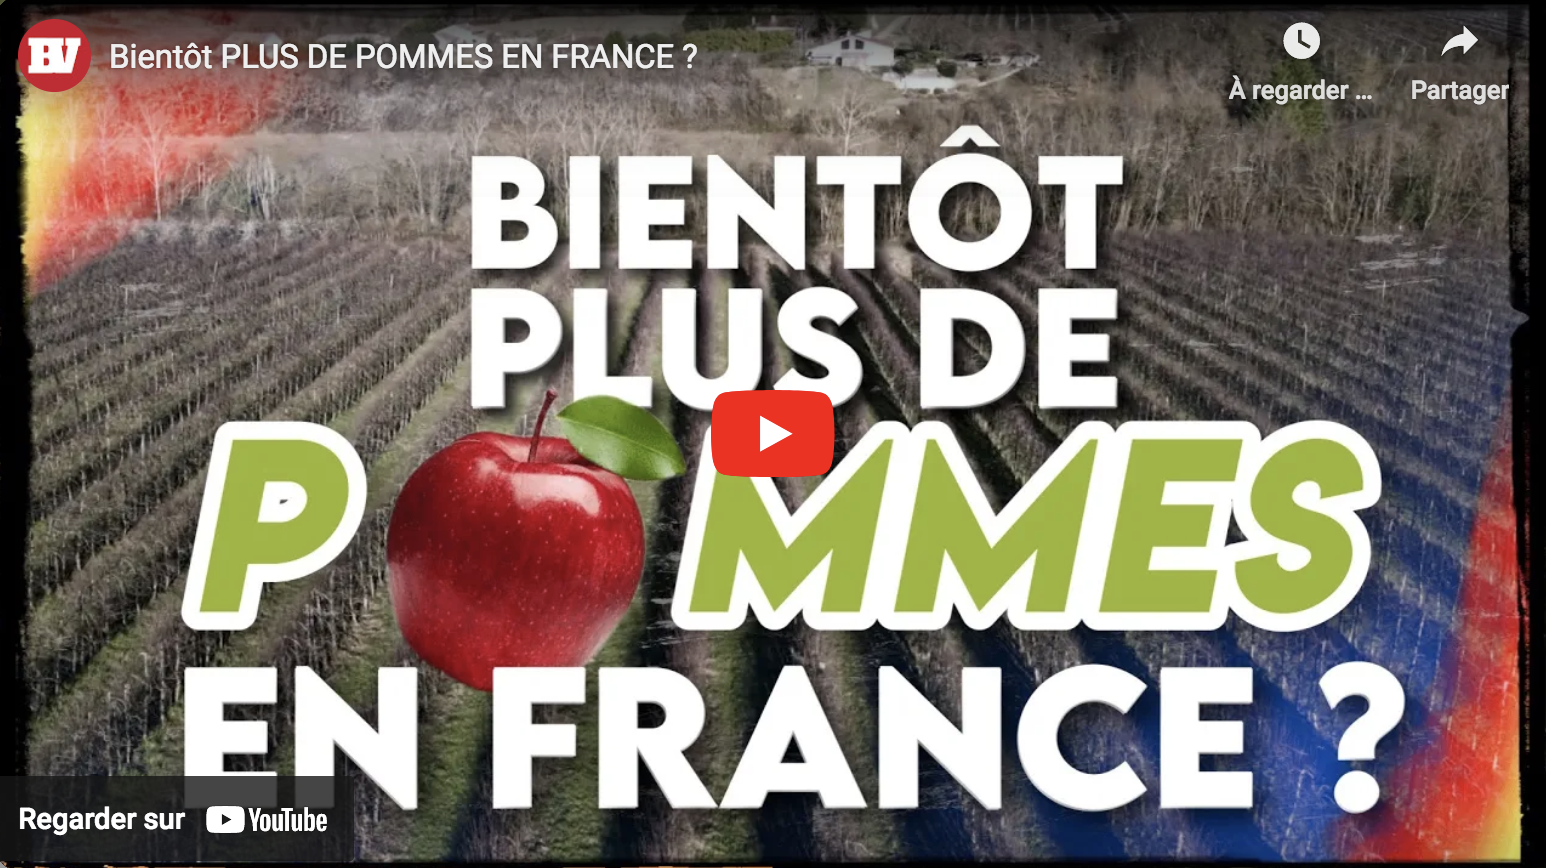 Bientôt plus de pommes en France ?